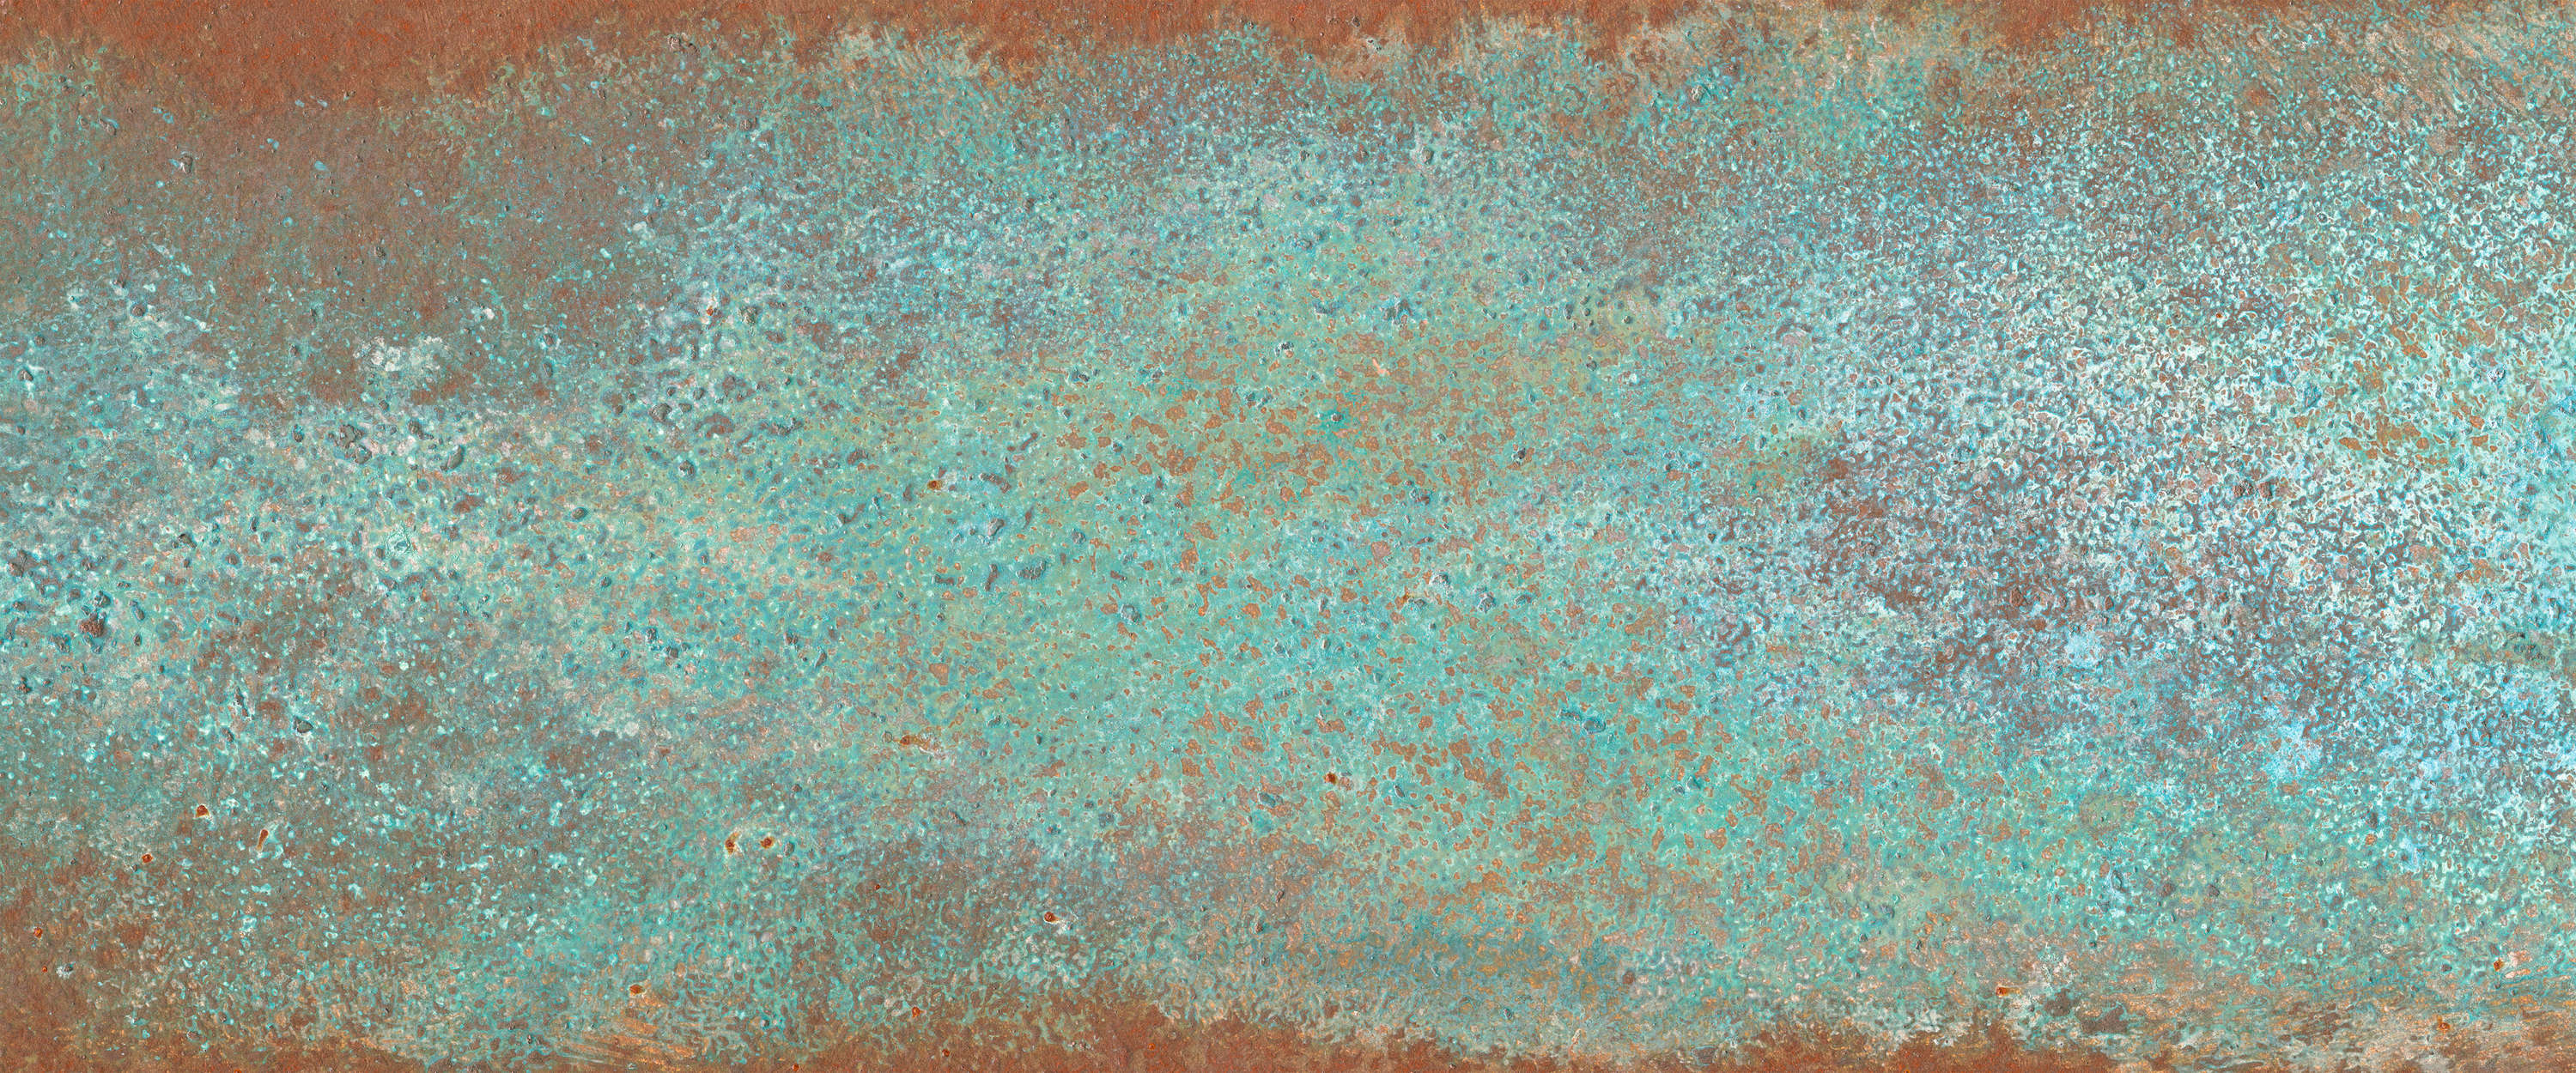             Papel fotográfico de óptica metálica pátina turquesa con óxido
        